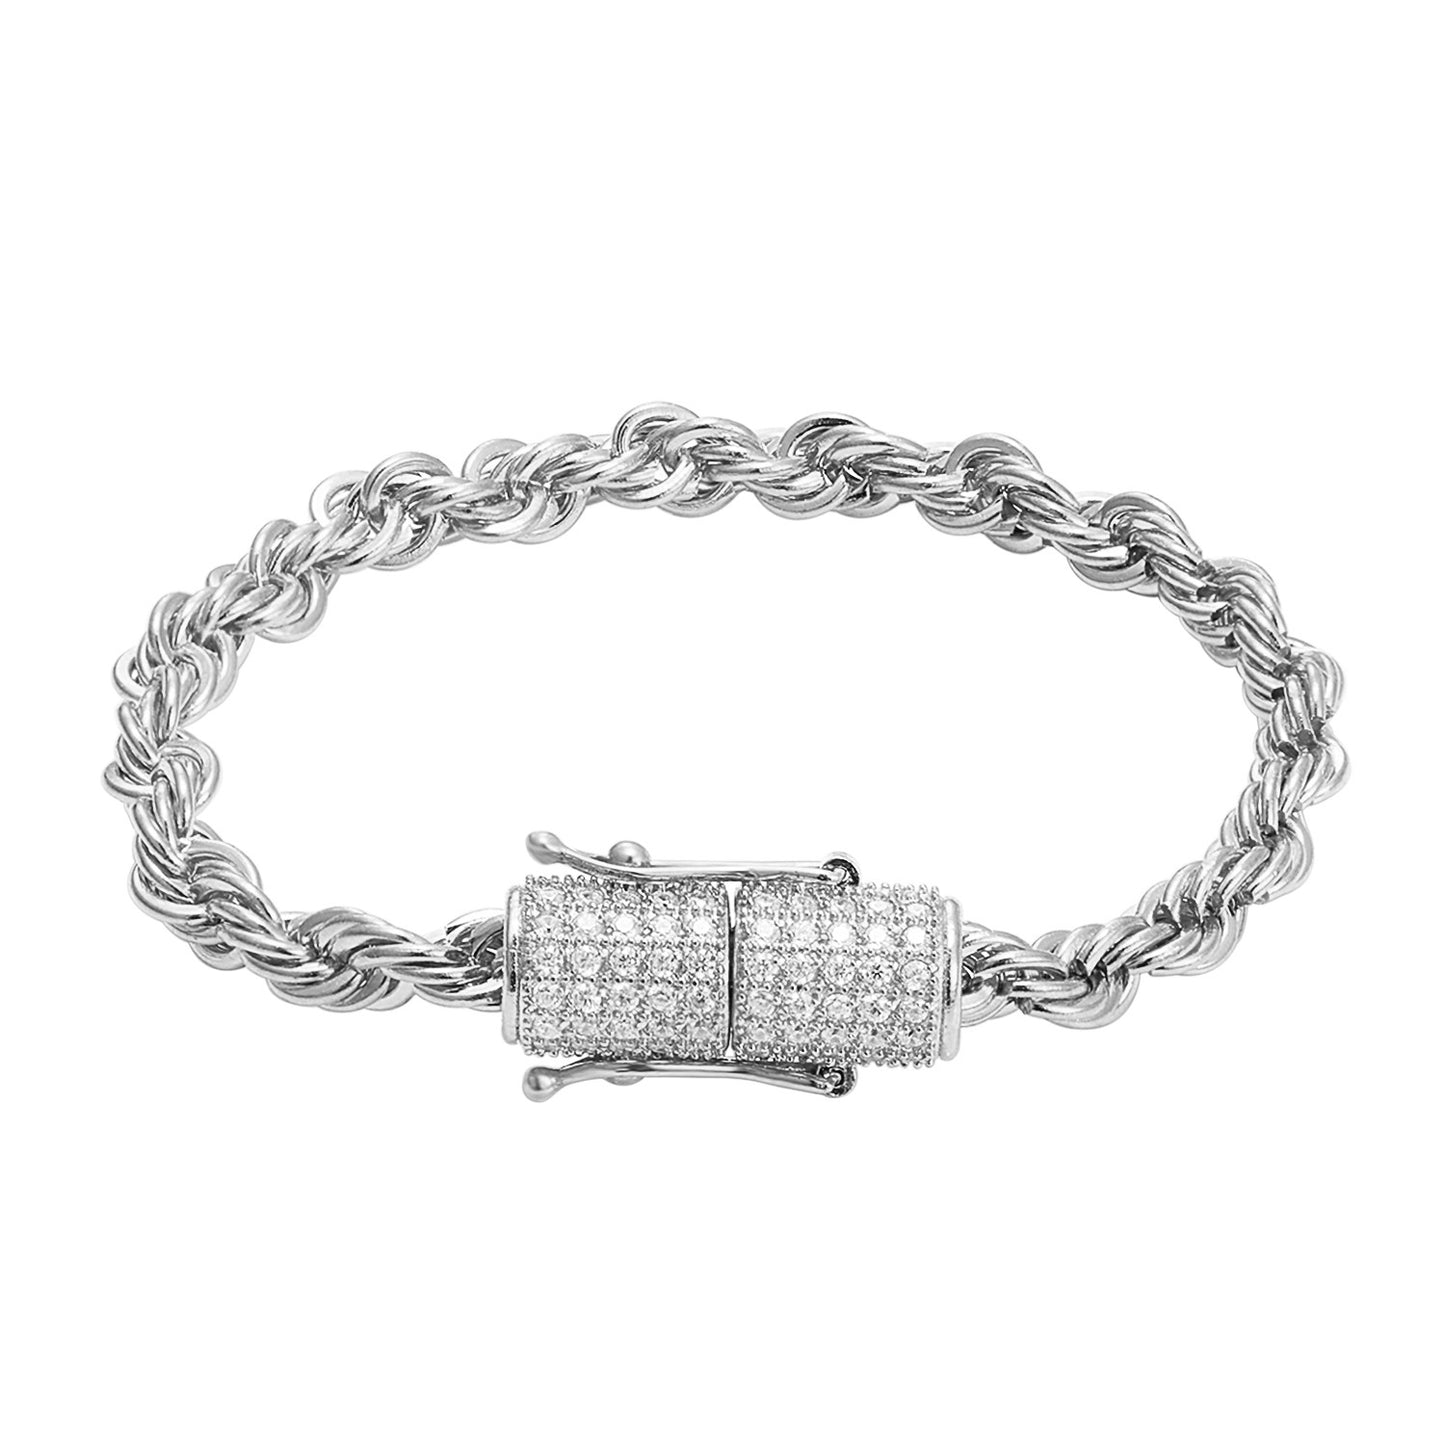 Stainless Steel 14k White Gold Finish 4mm Rope Bracelet Designer New Bling Lock